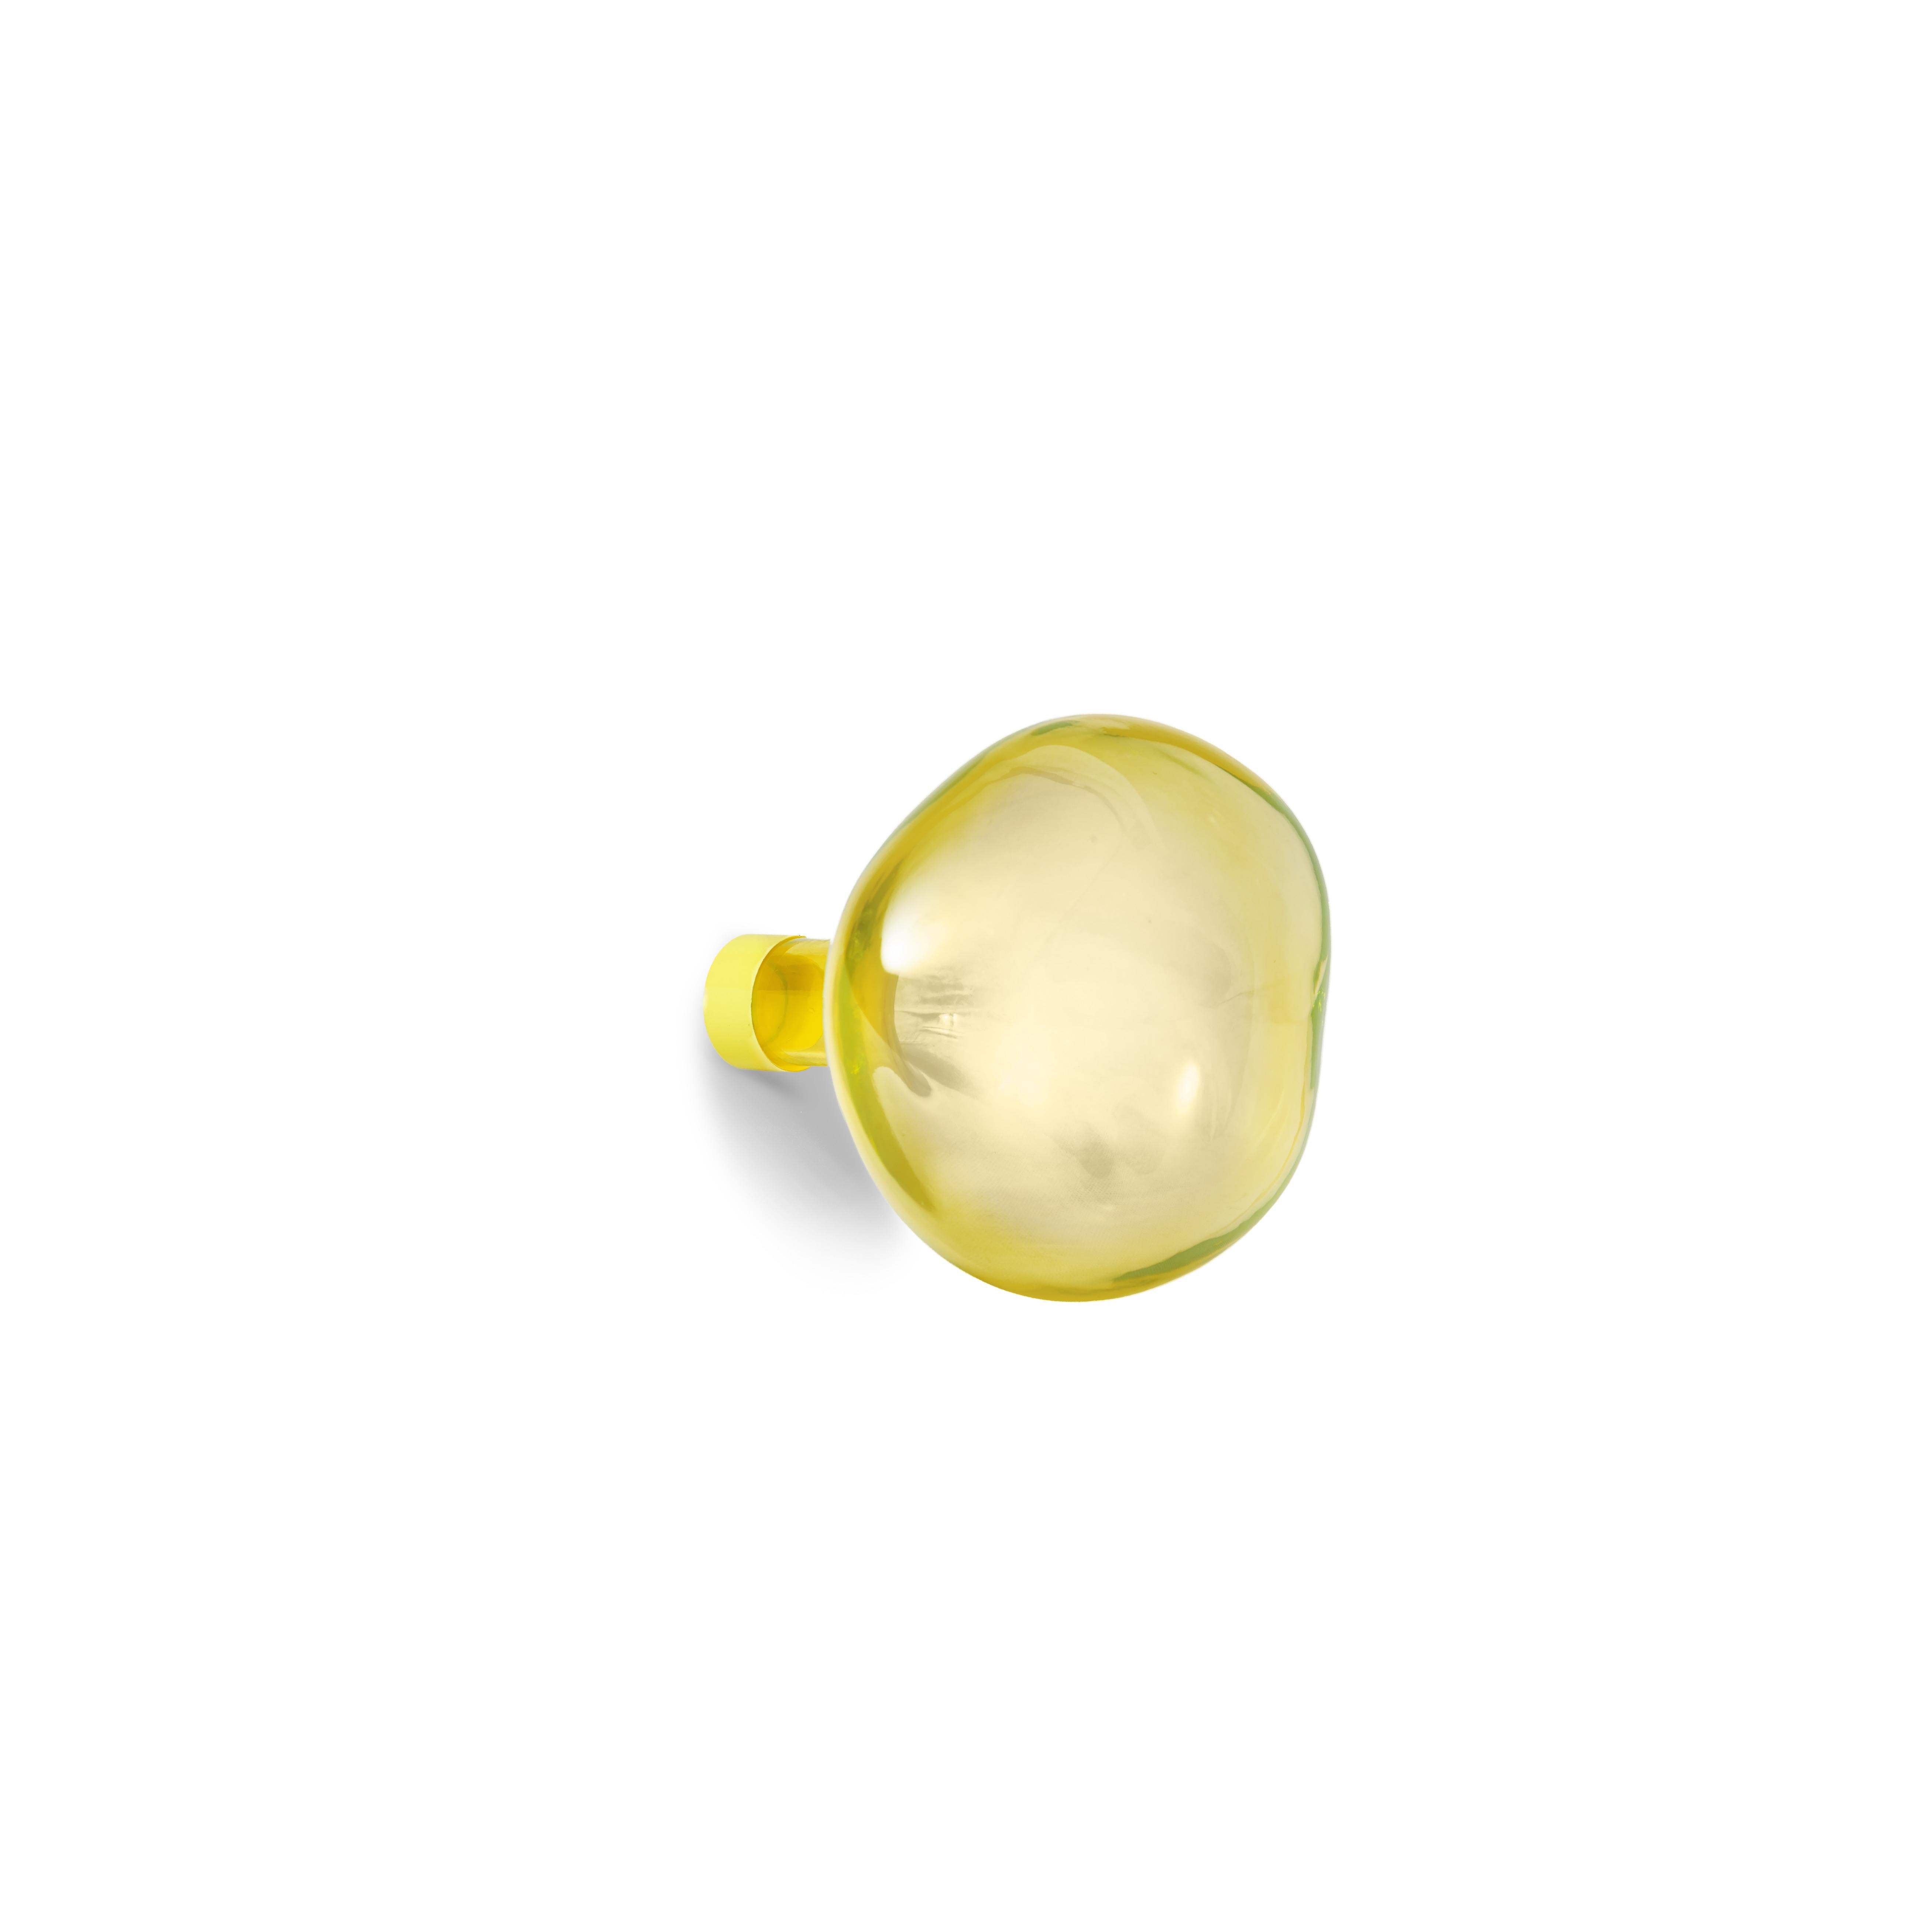 Petite Friture Großer Blasen-Kleiderbügel aus transparentem gelbem Glas von Vaulot & Dyèvre, 2014

Die von Hand in eine Form geblasenen Seifenblasenköche gibt es in zwei Größen und sie bilden sich wie Seifenblasen in unvorhersehbaren Formen. Das